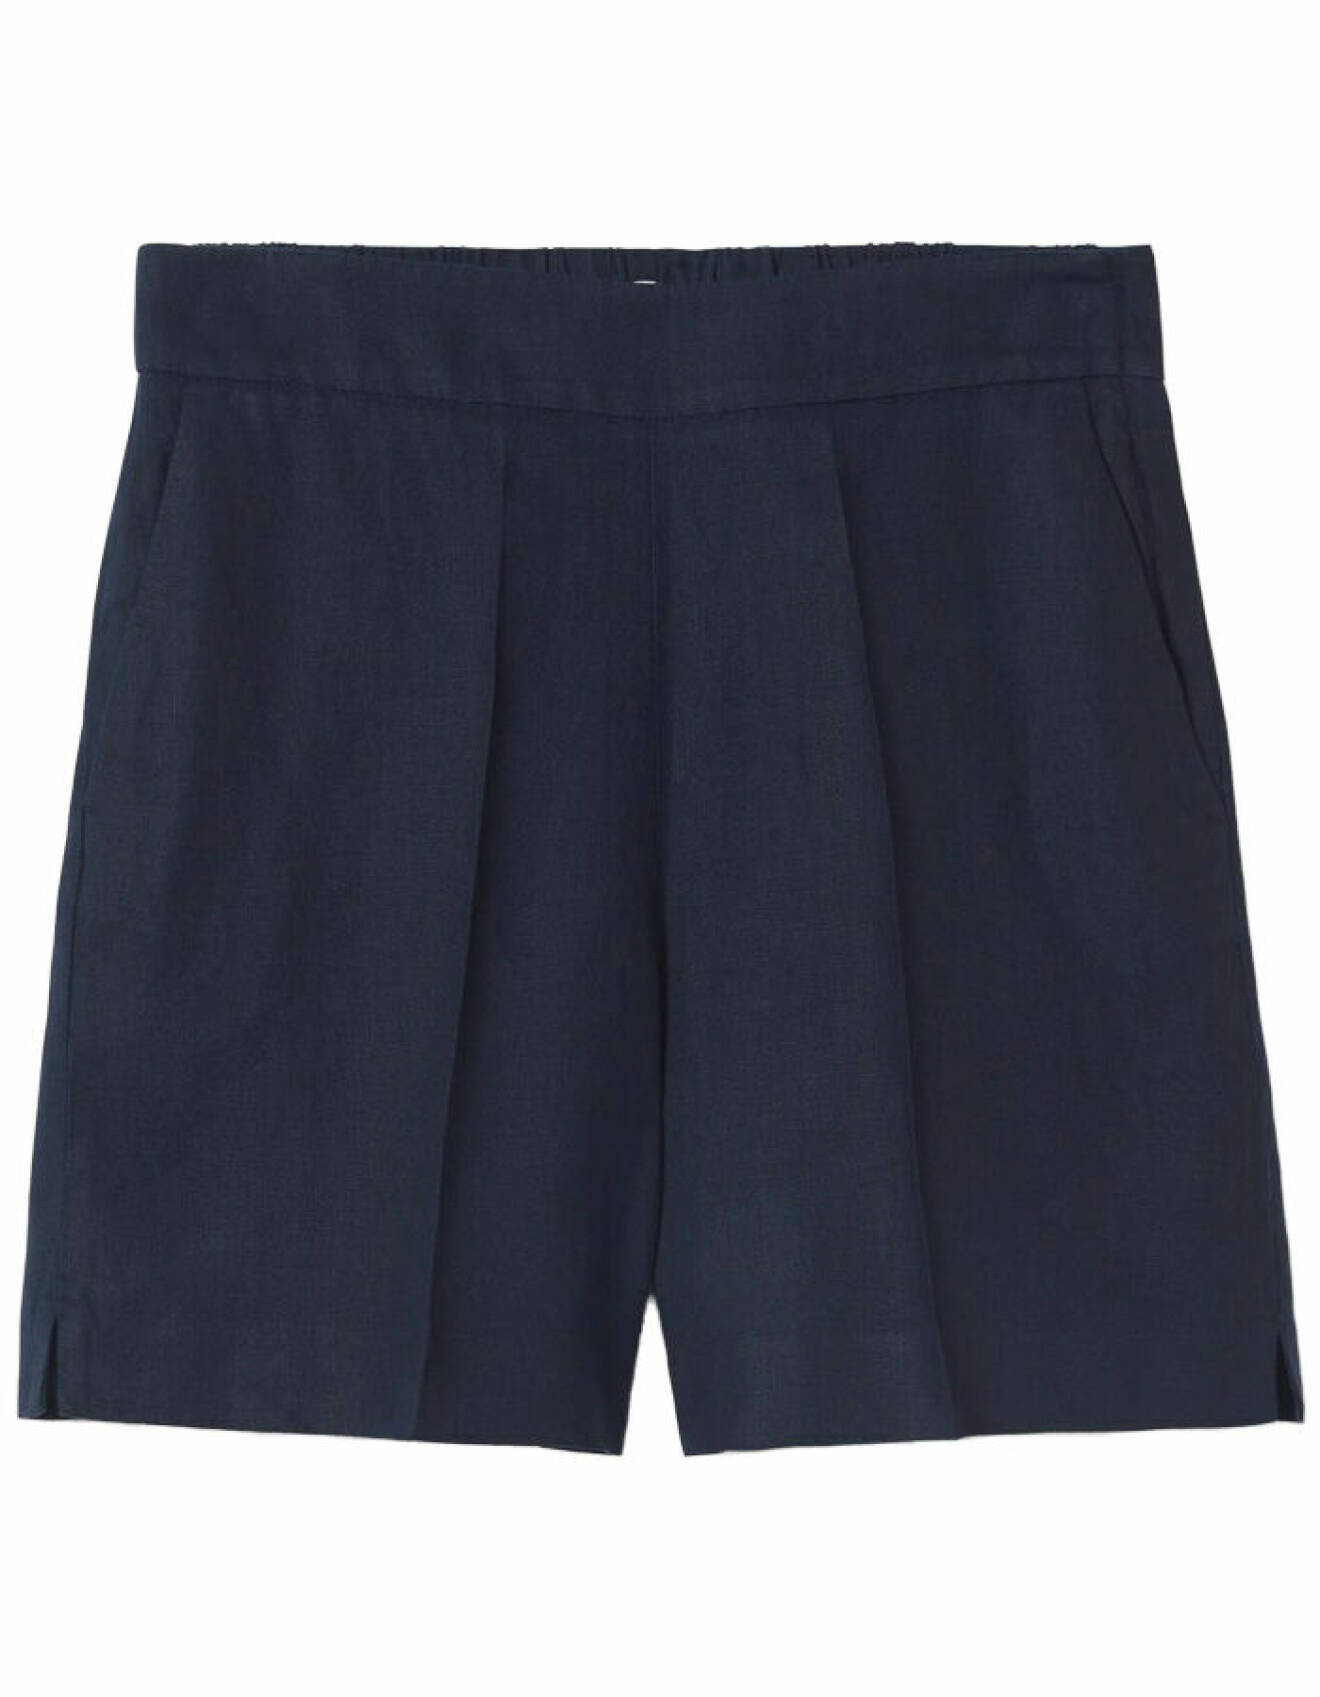 blå shorts med pressveck i linne för dam från bondelid